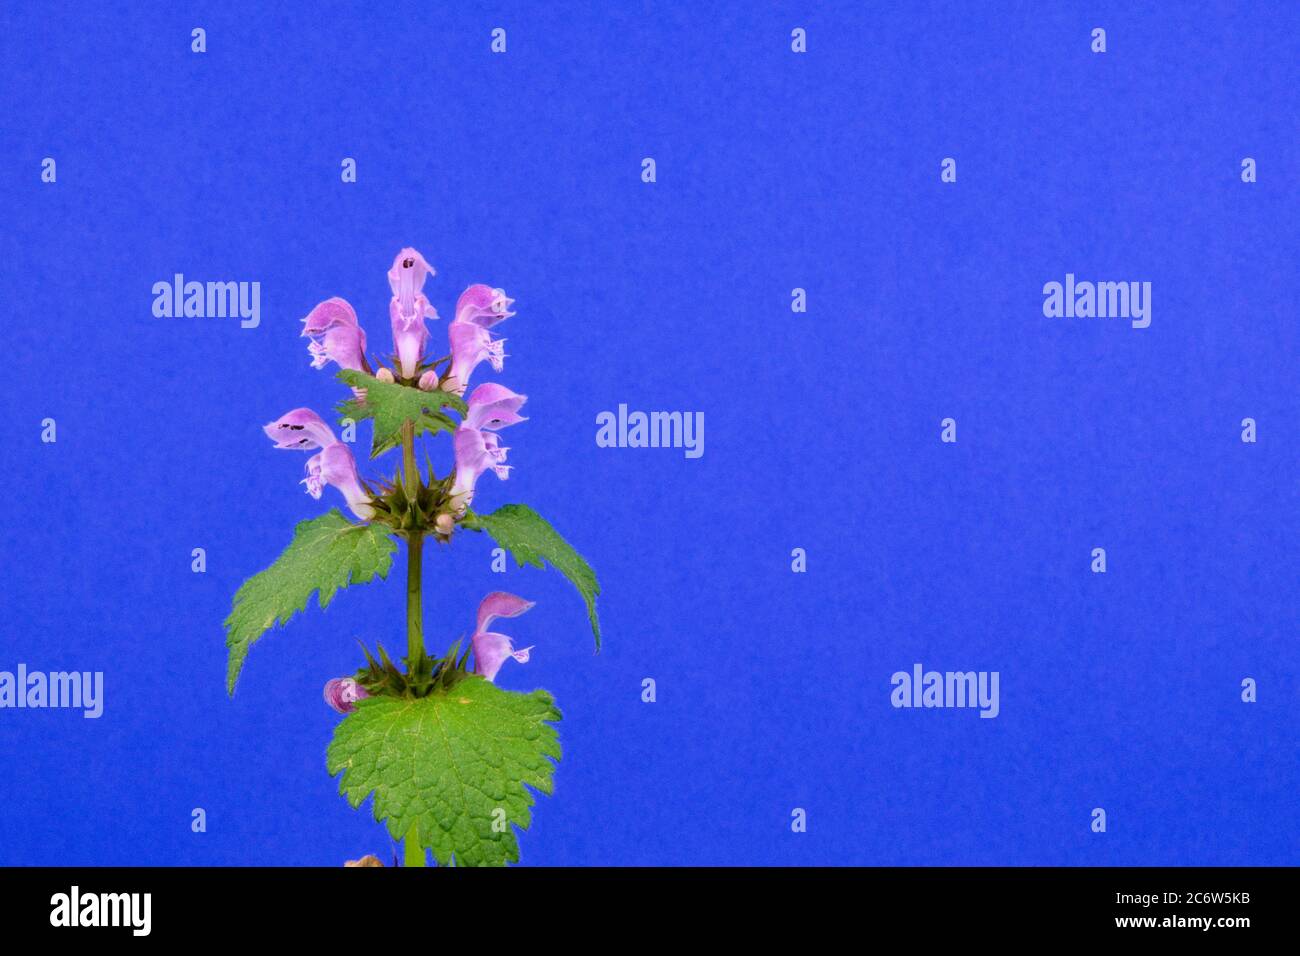 Gros plan d'une fleur violette sauvage, une espèce d'ortie ou d'enbout tacheté, nom scientifique Lamium maculatum Banque D'Images